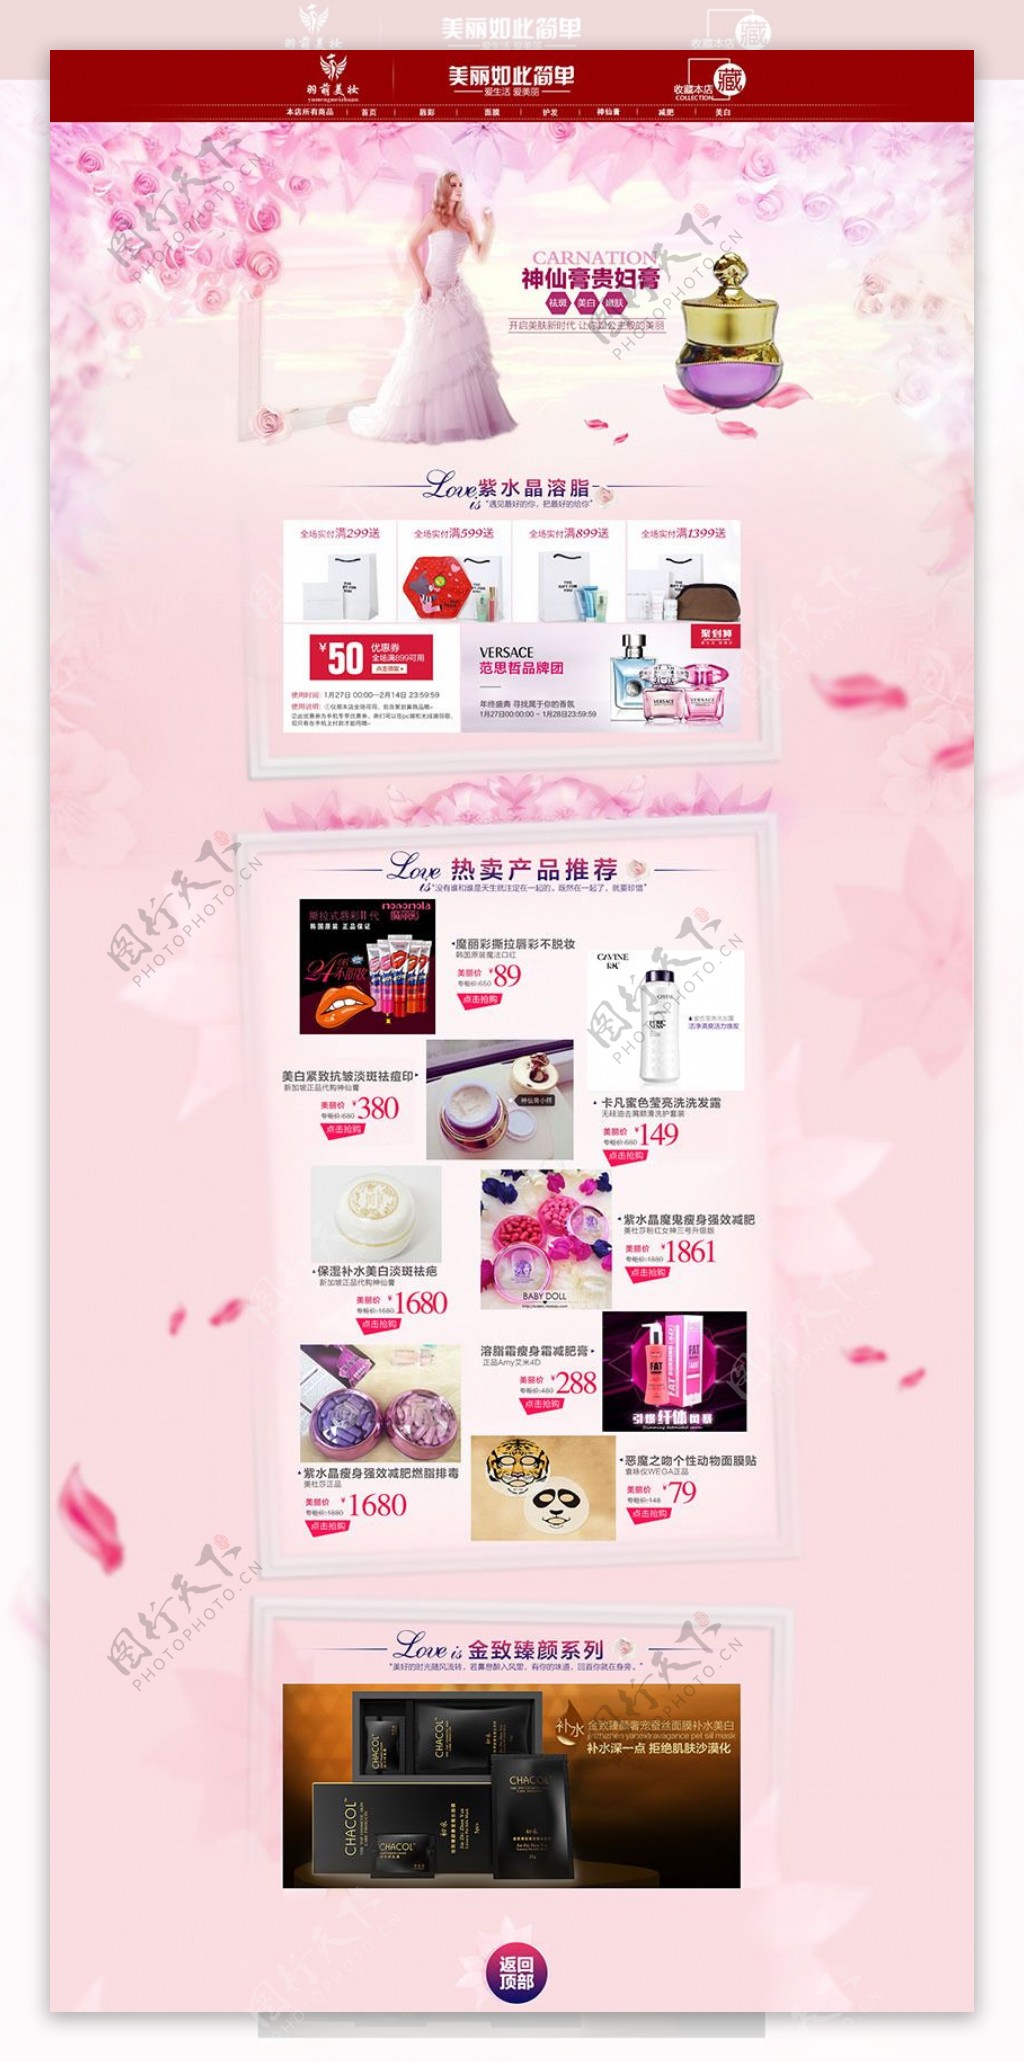 淘宝化妆品促销活动页面设计PSD素材